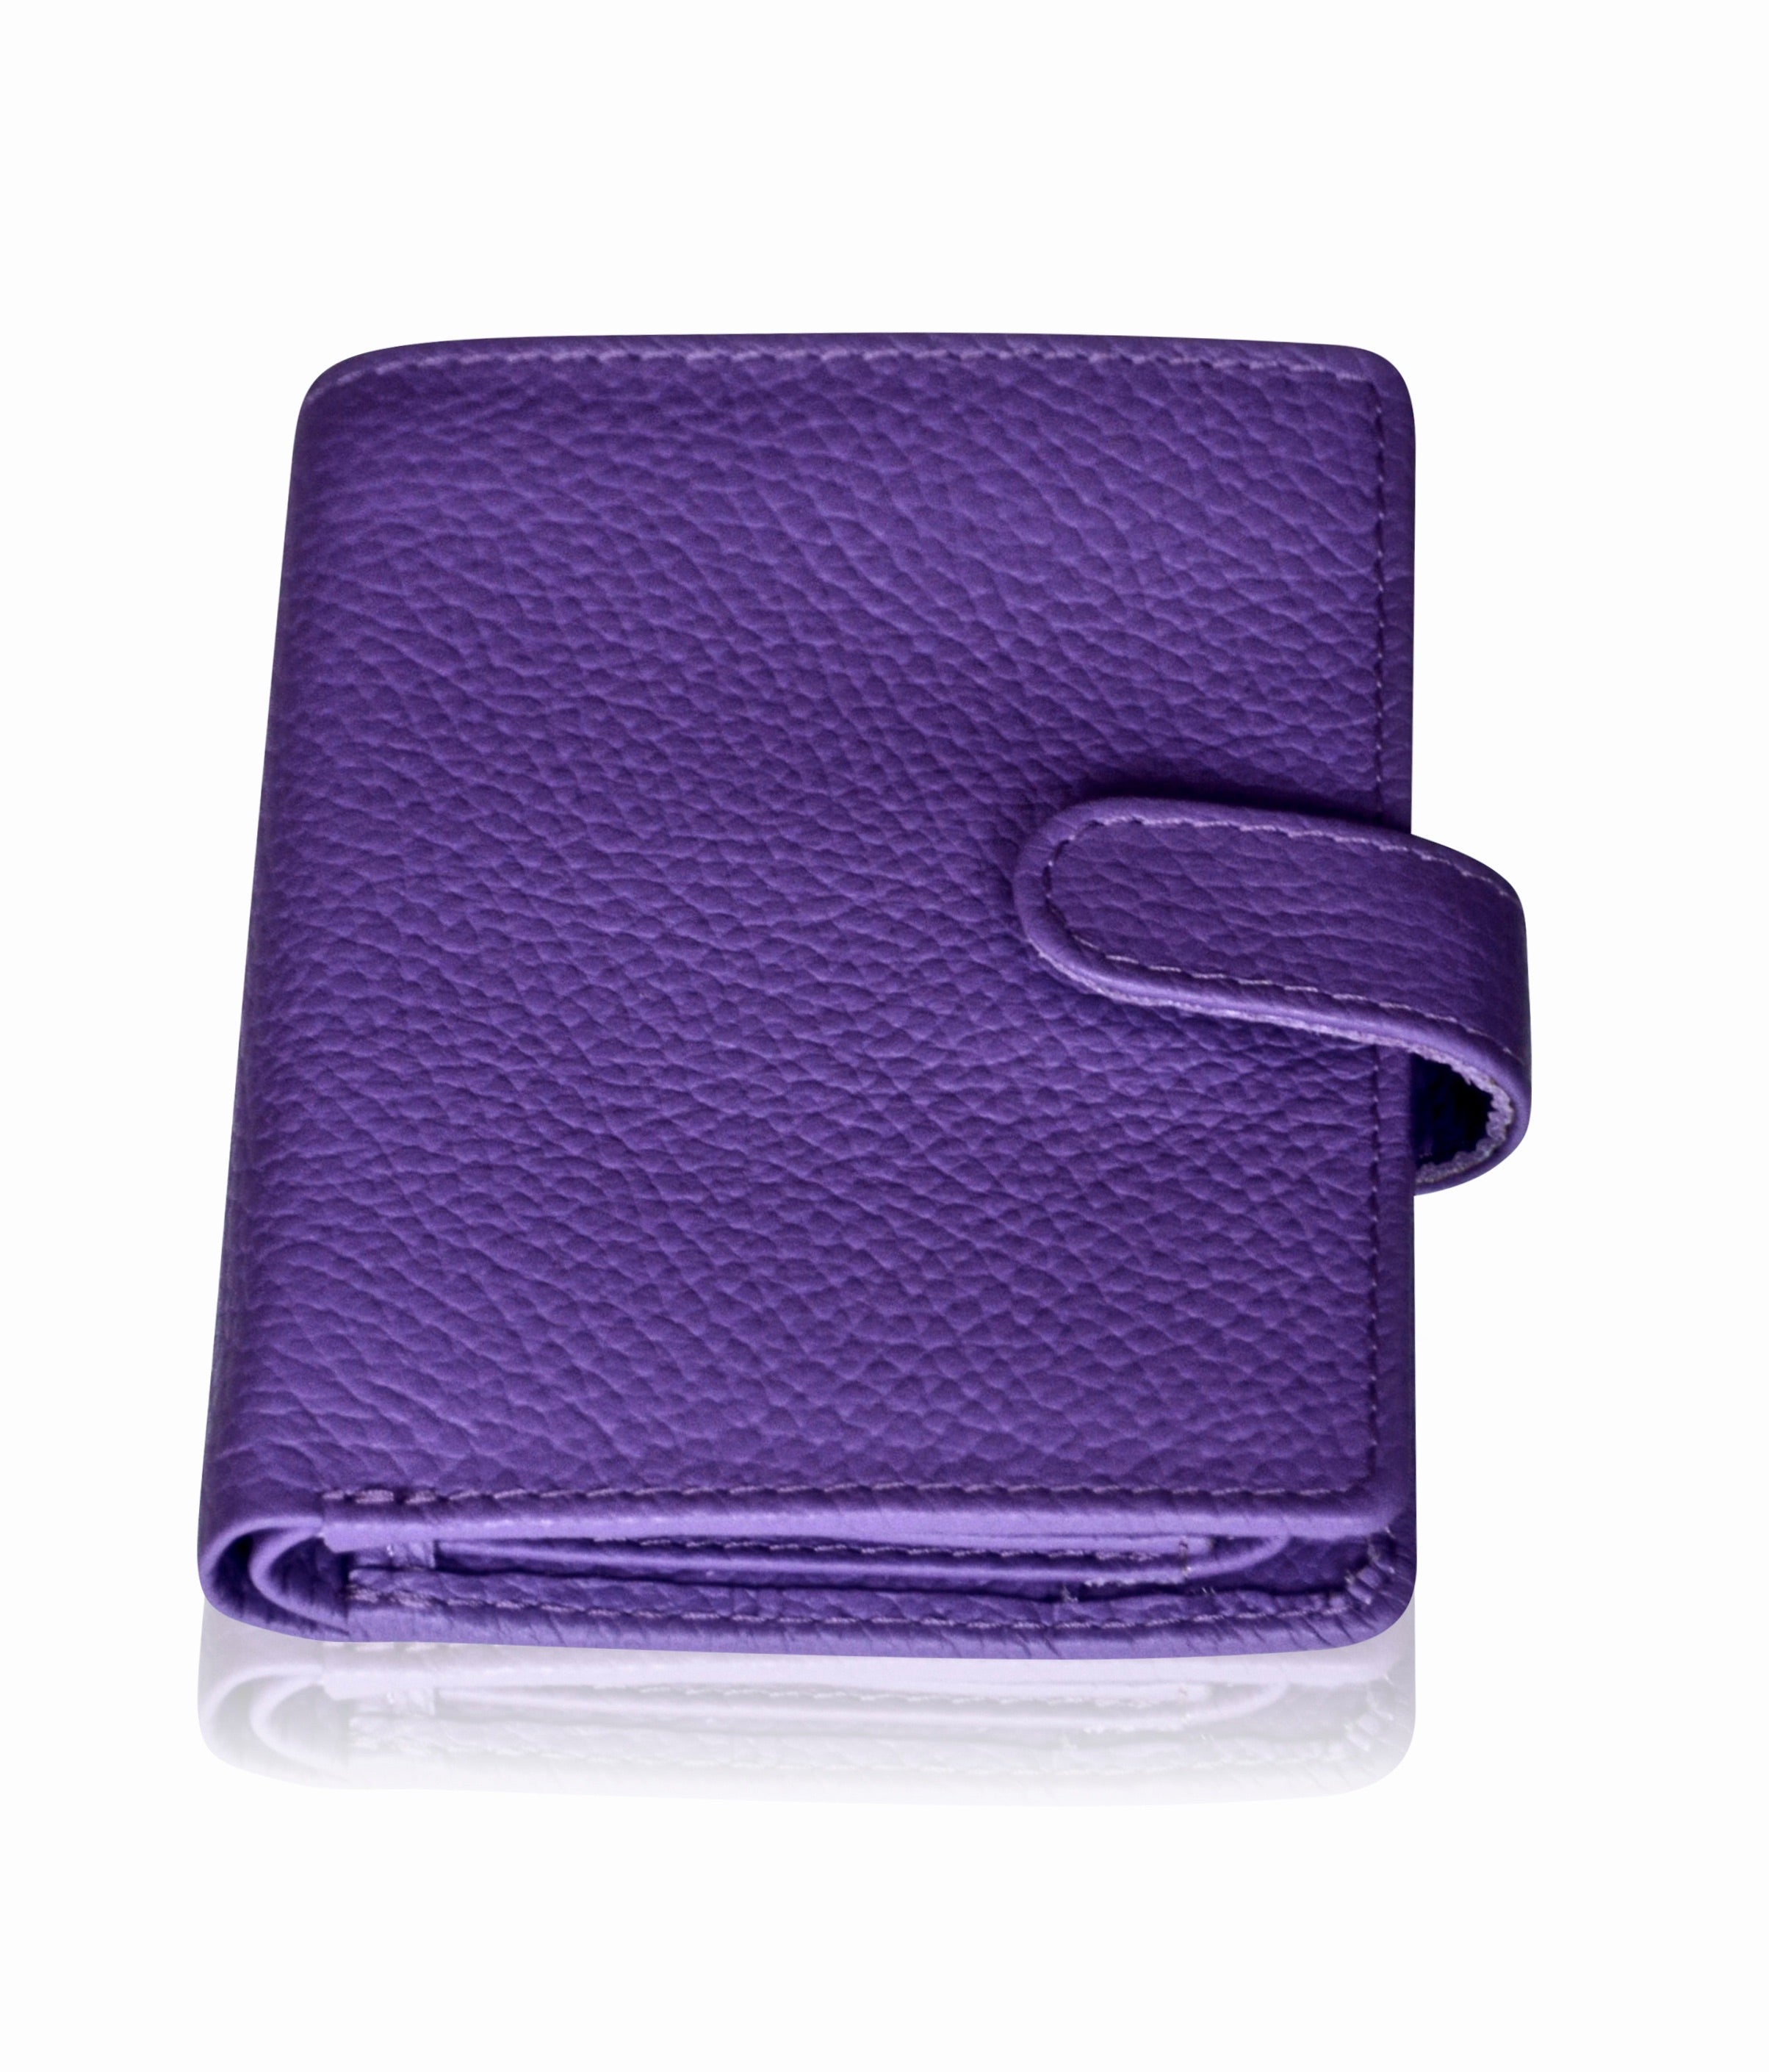 Designer Leather Wallet